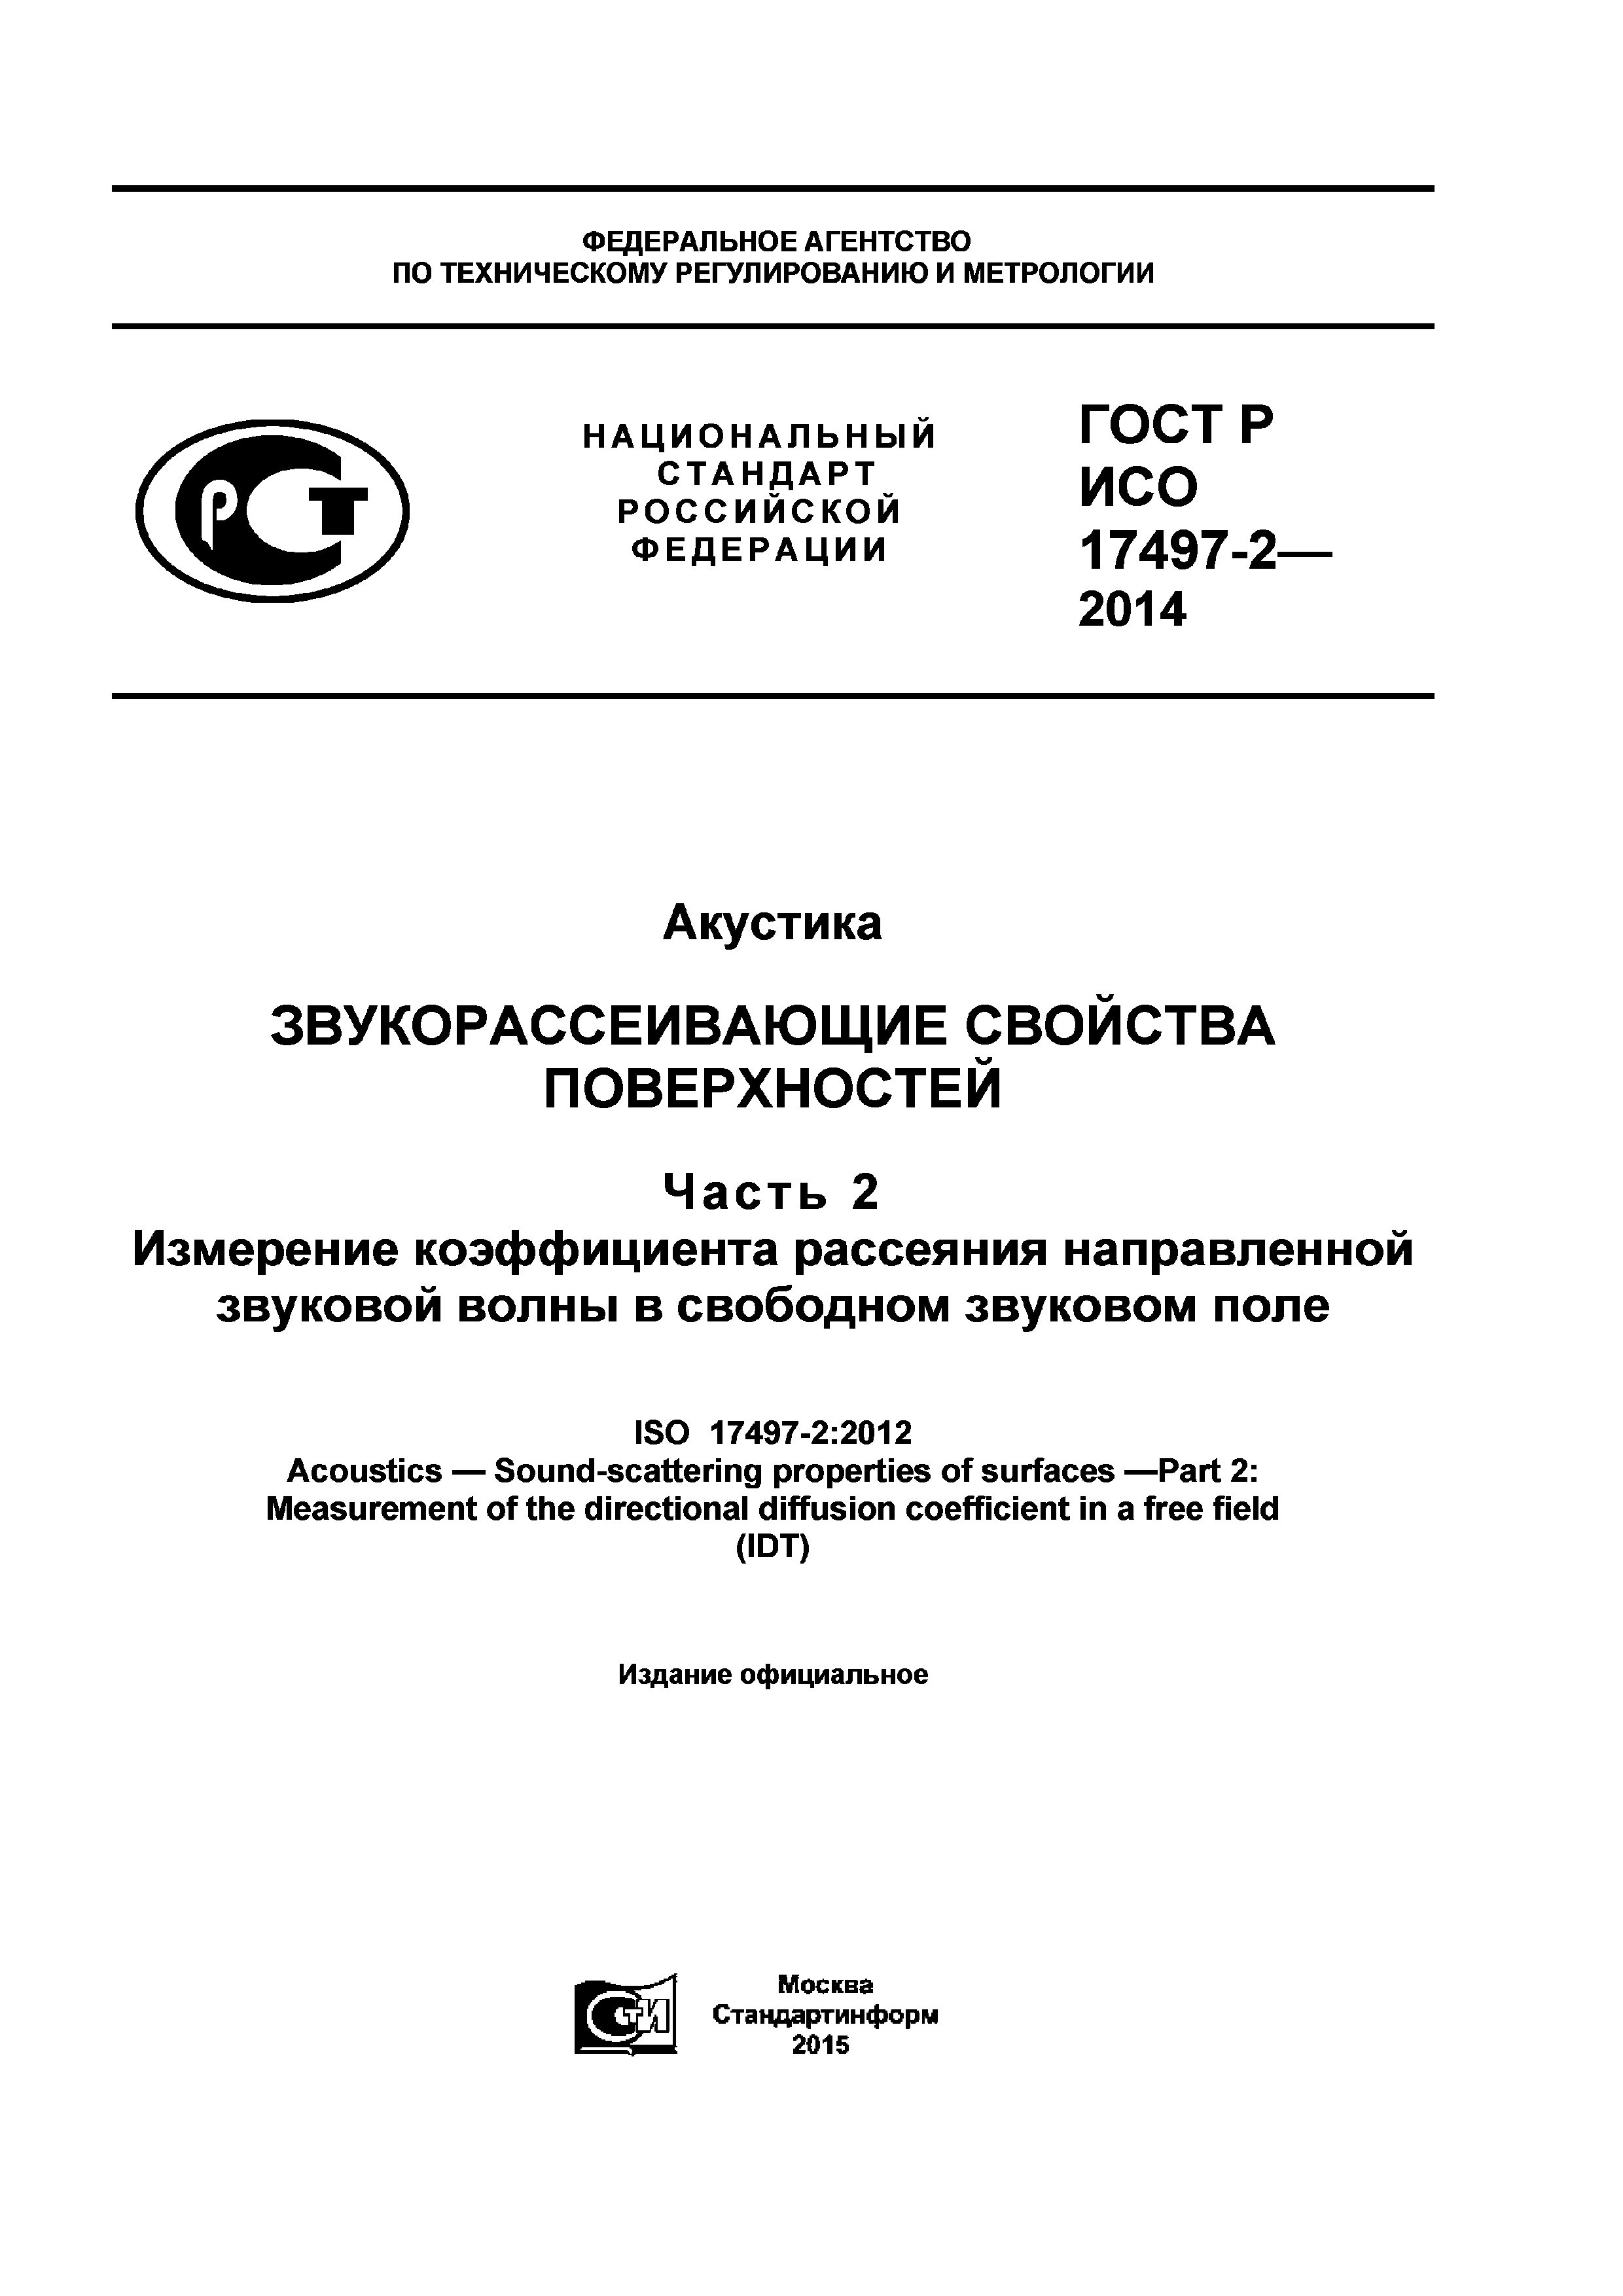 ГОСТ Р ИСО 17497-2-2014